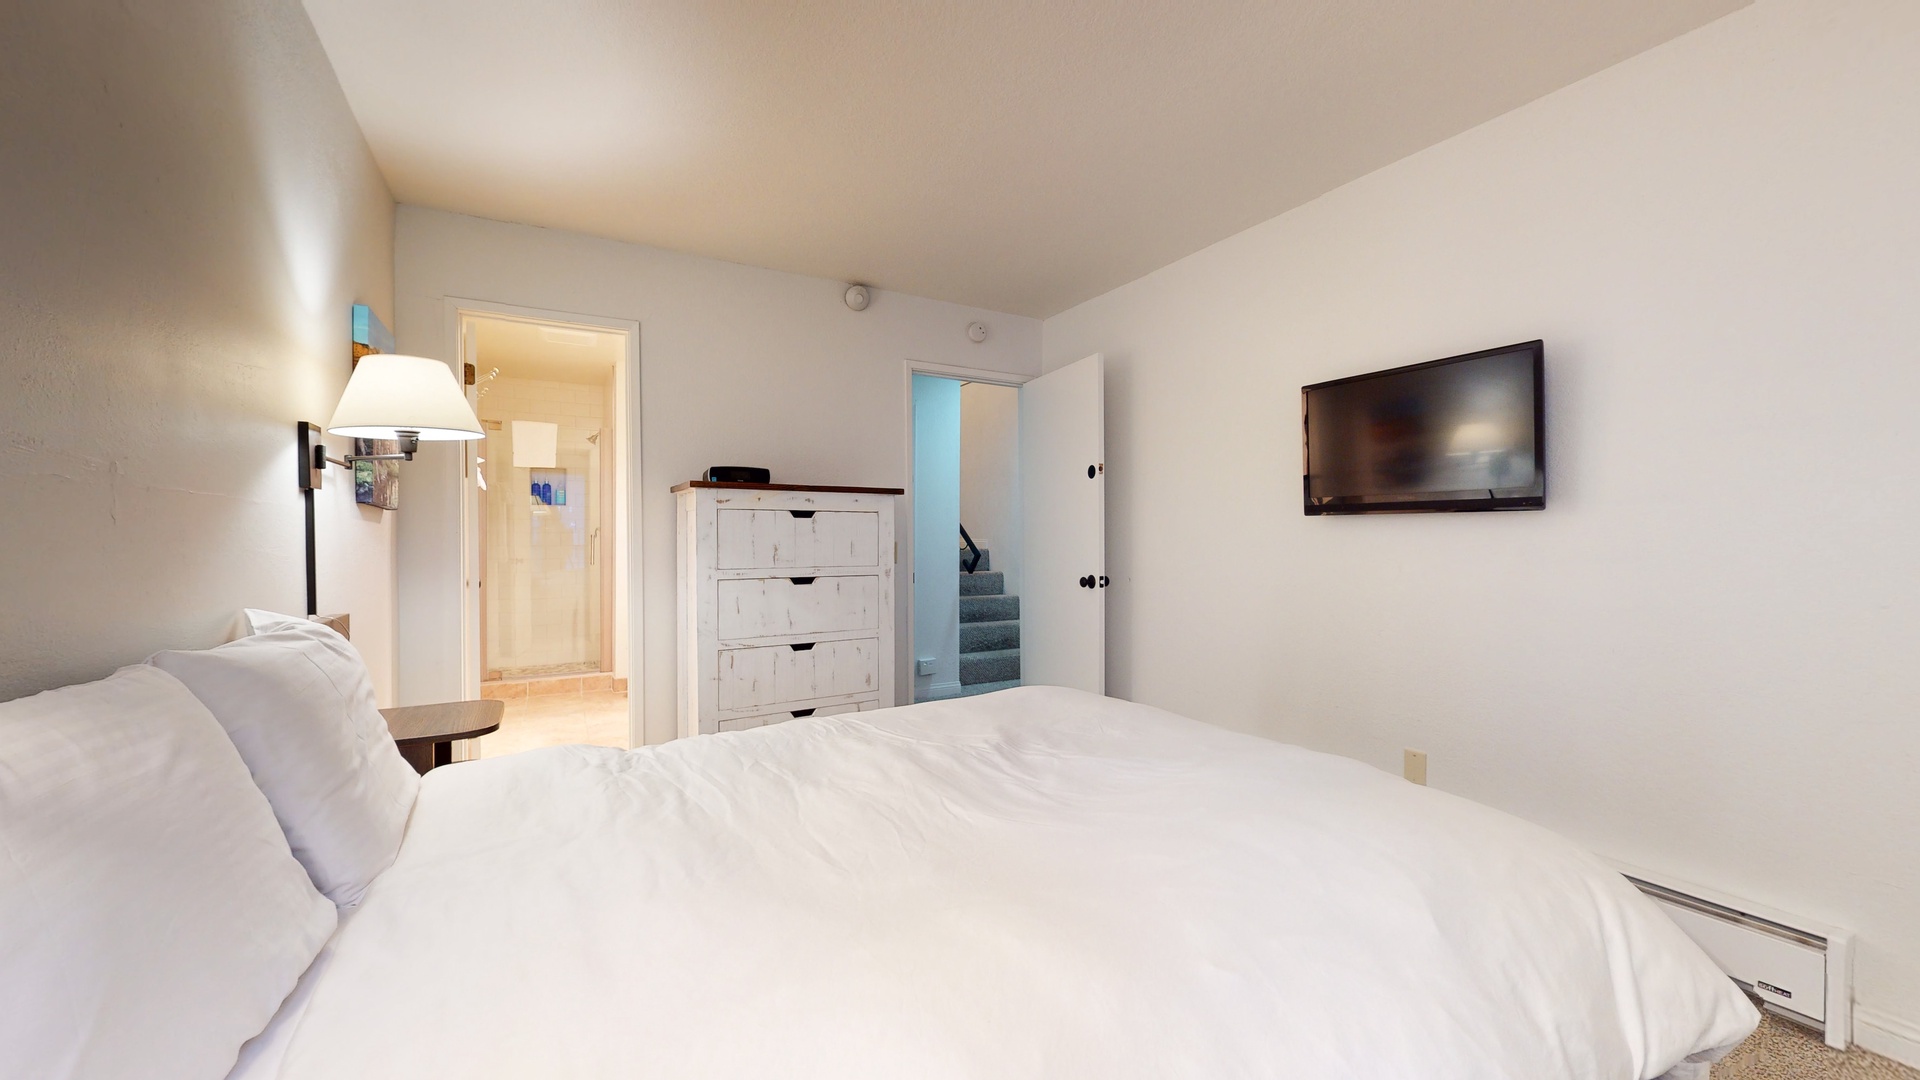 2nd bedroom: Queen bed with TV and en suite bathroom